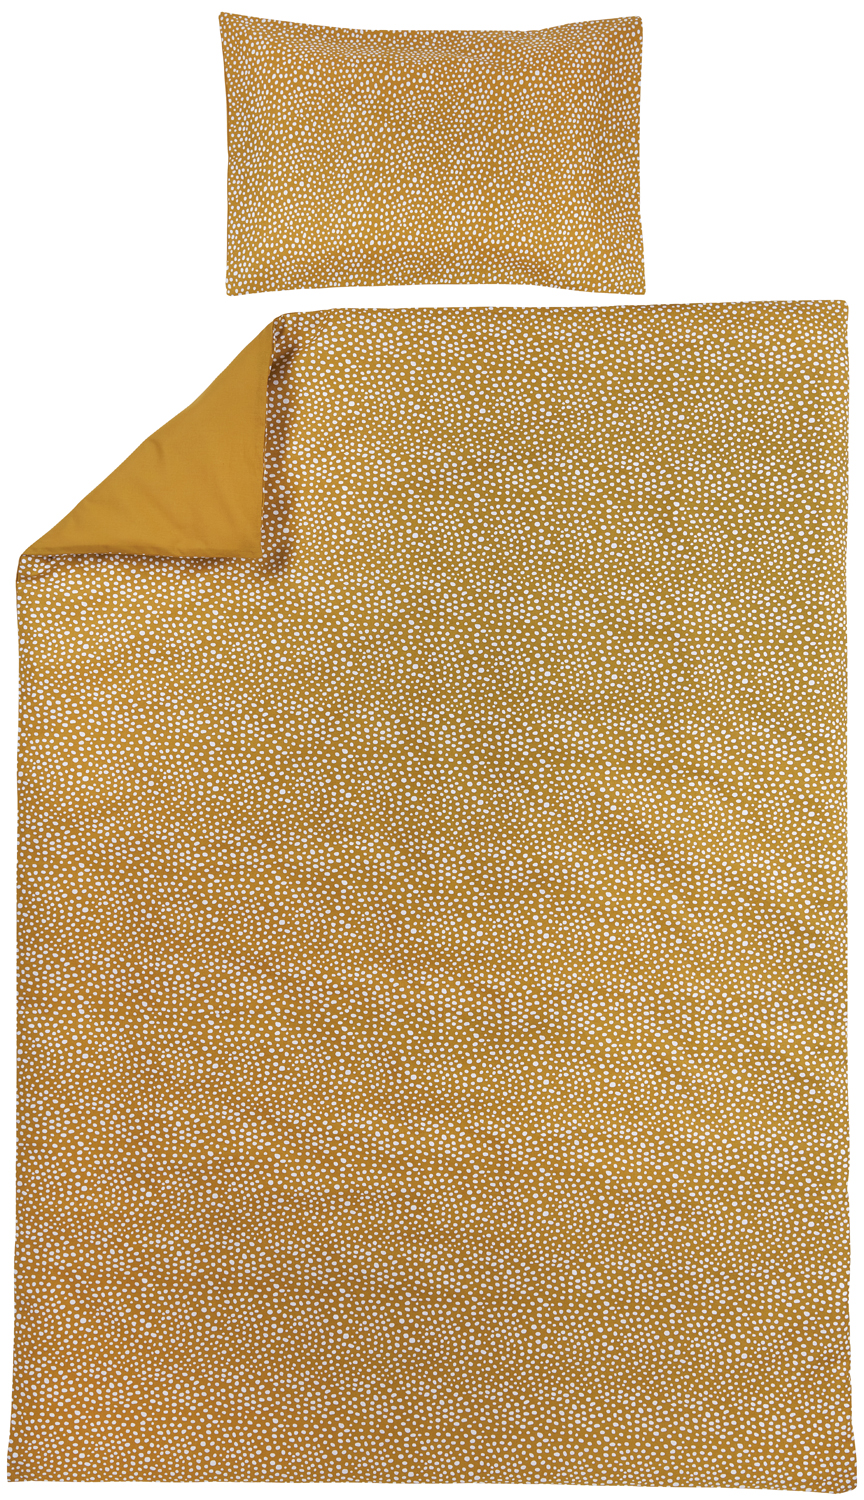 Dekbedovertrek eenpersoons Cheetah/Uni - honey gold - 140x200/220cm